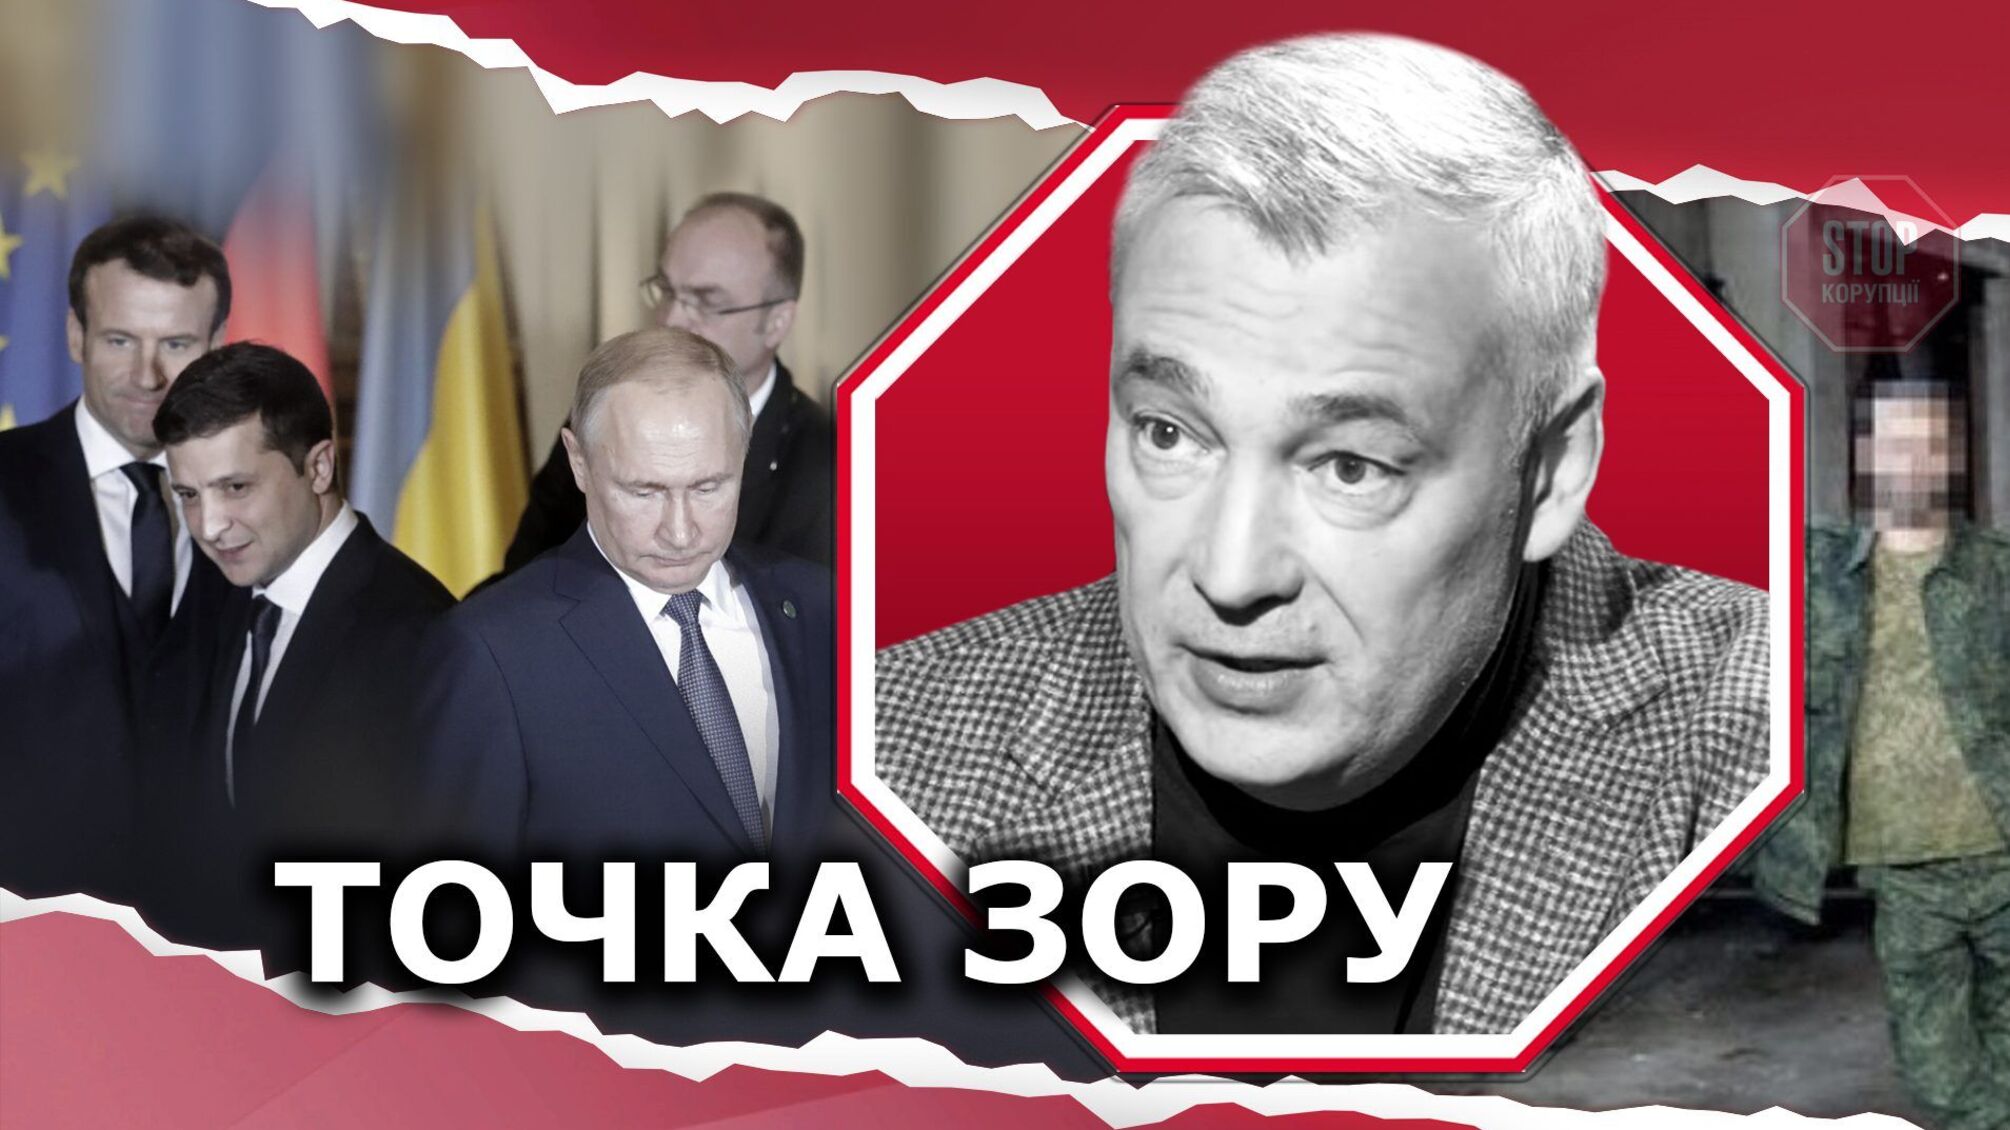 Арест Косяка: Россия срывает переговоры в нормандском формате?